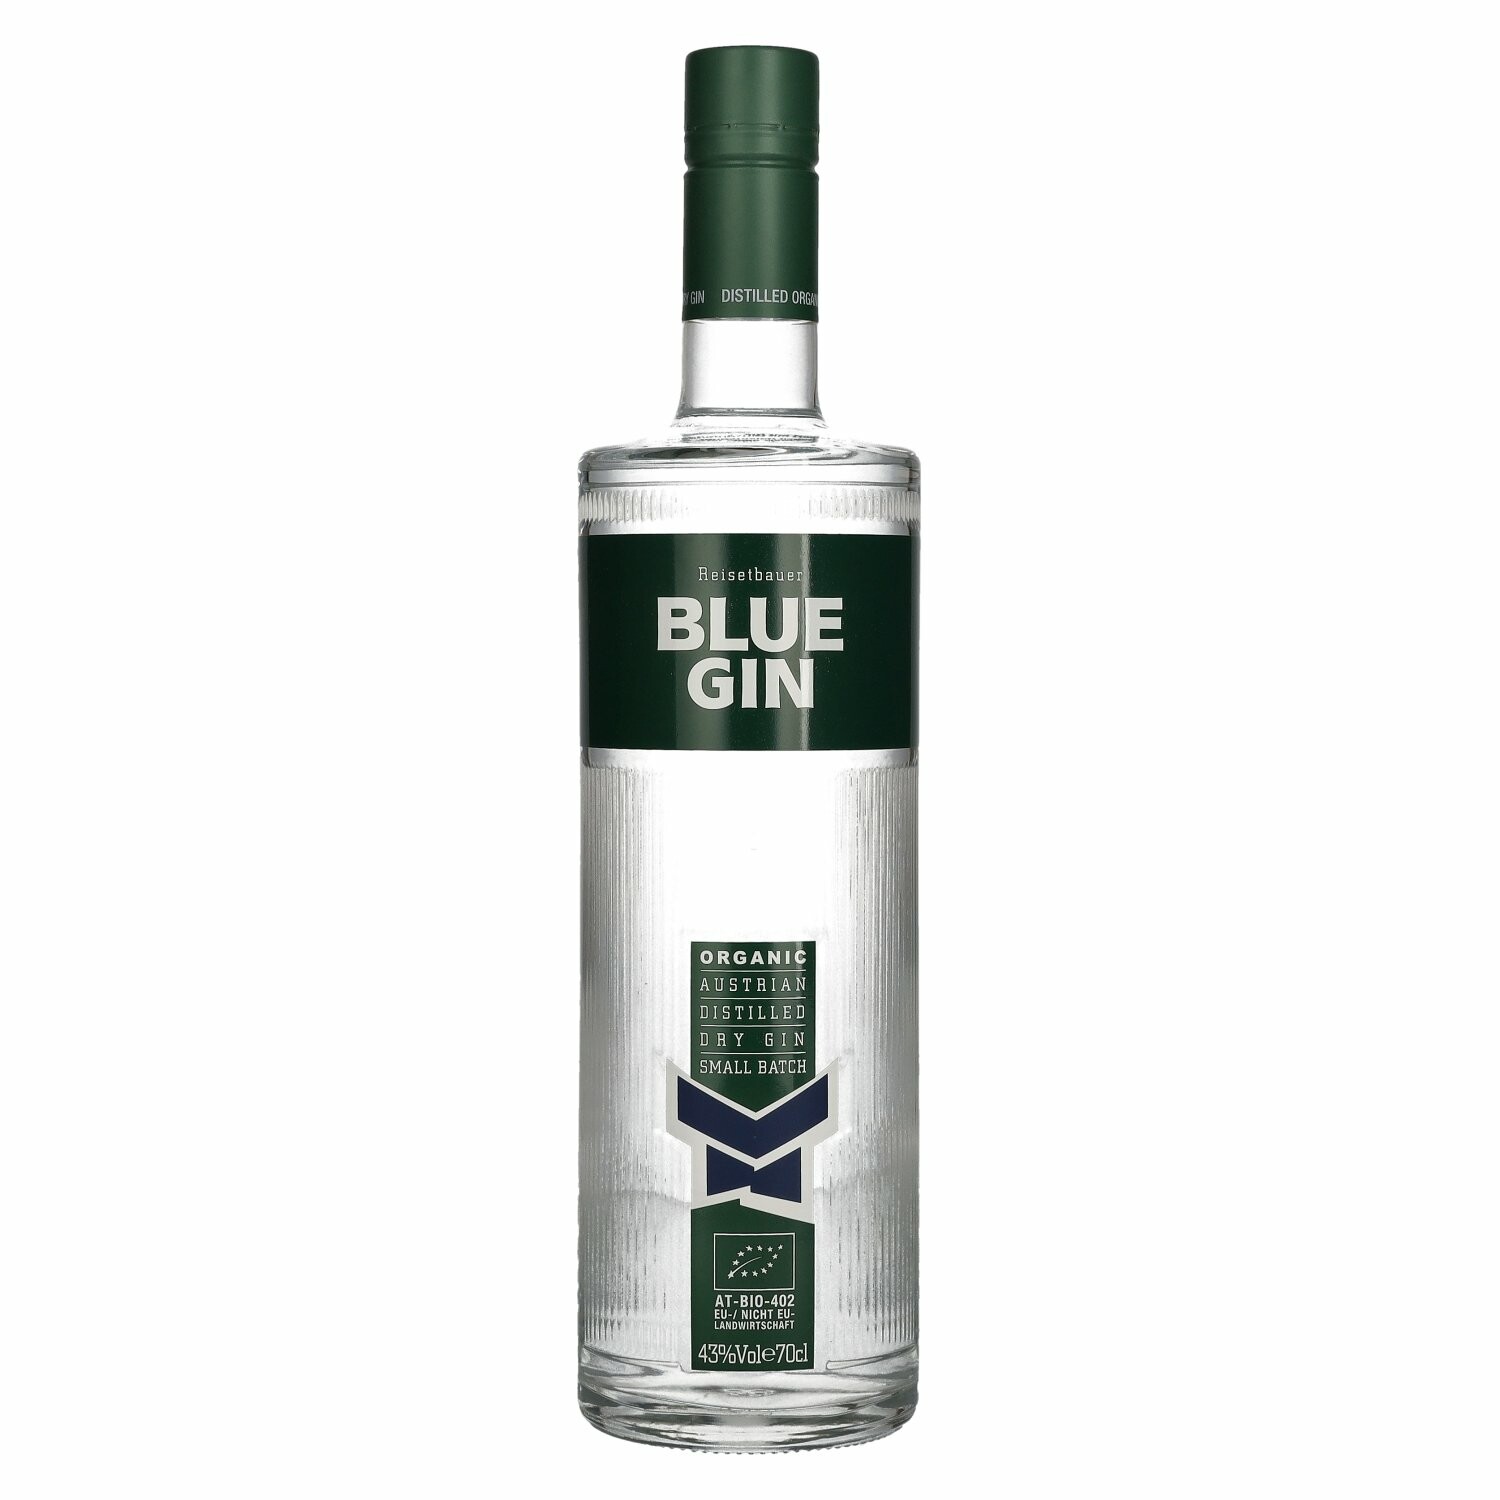 Reisetbauer Blue Gin Organic 43% Vol. 0,7l